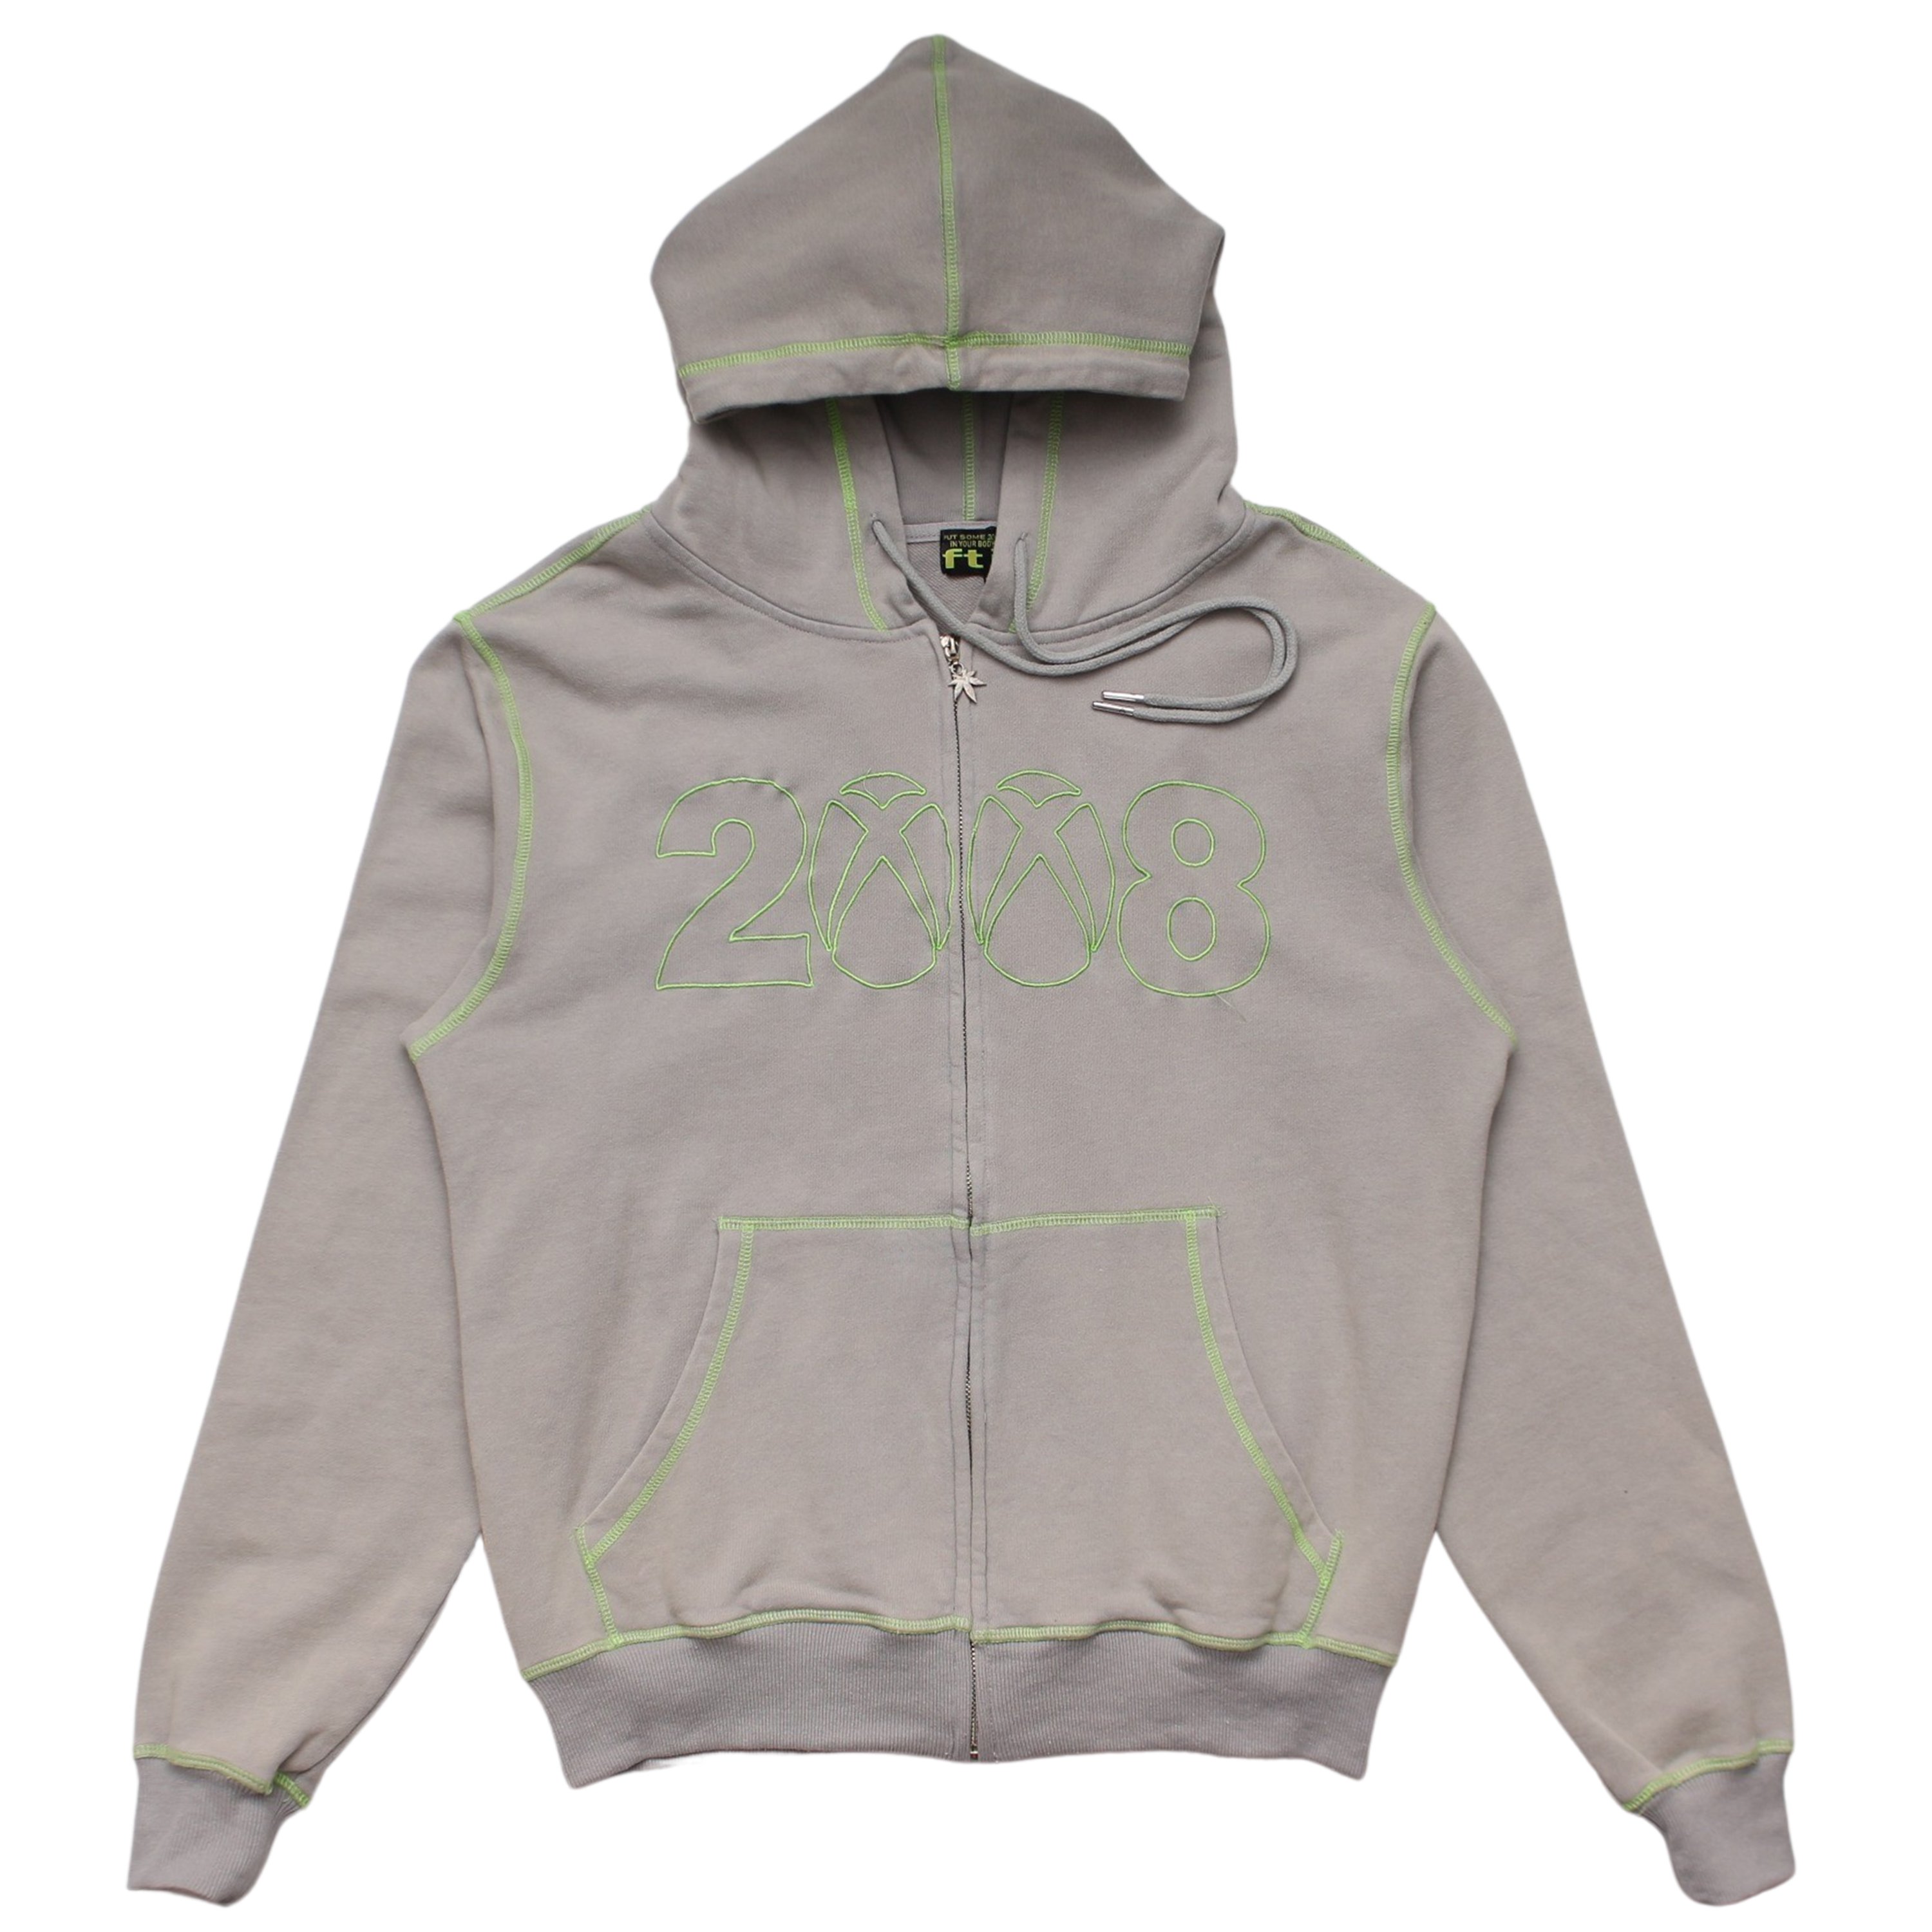 8box zip up hoodie【NEON】 - DOMICILE TOKYO ONLINE SHOP